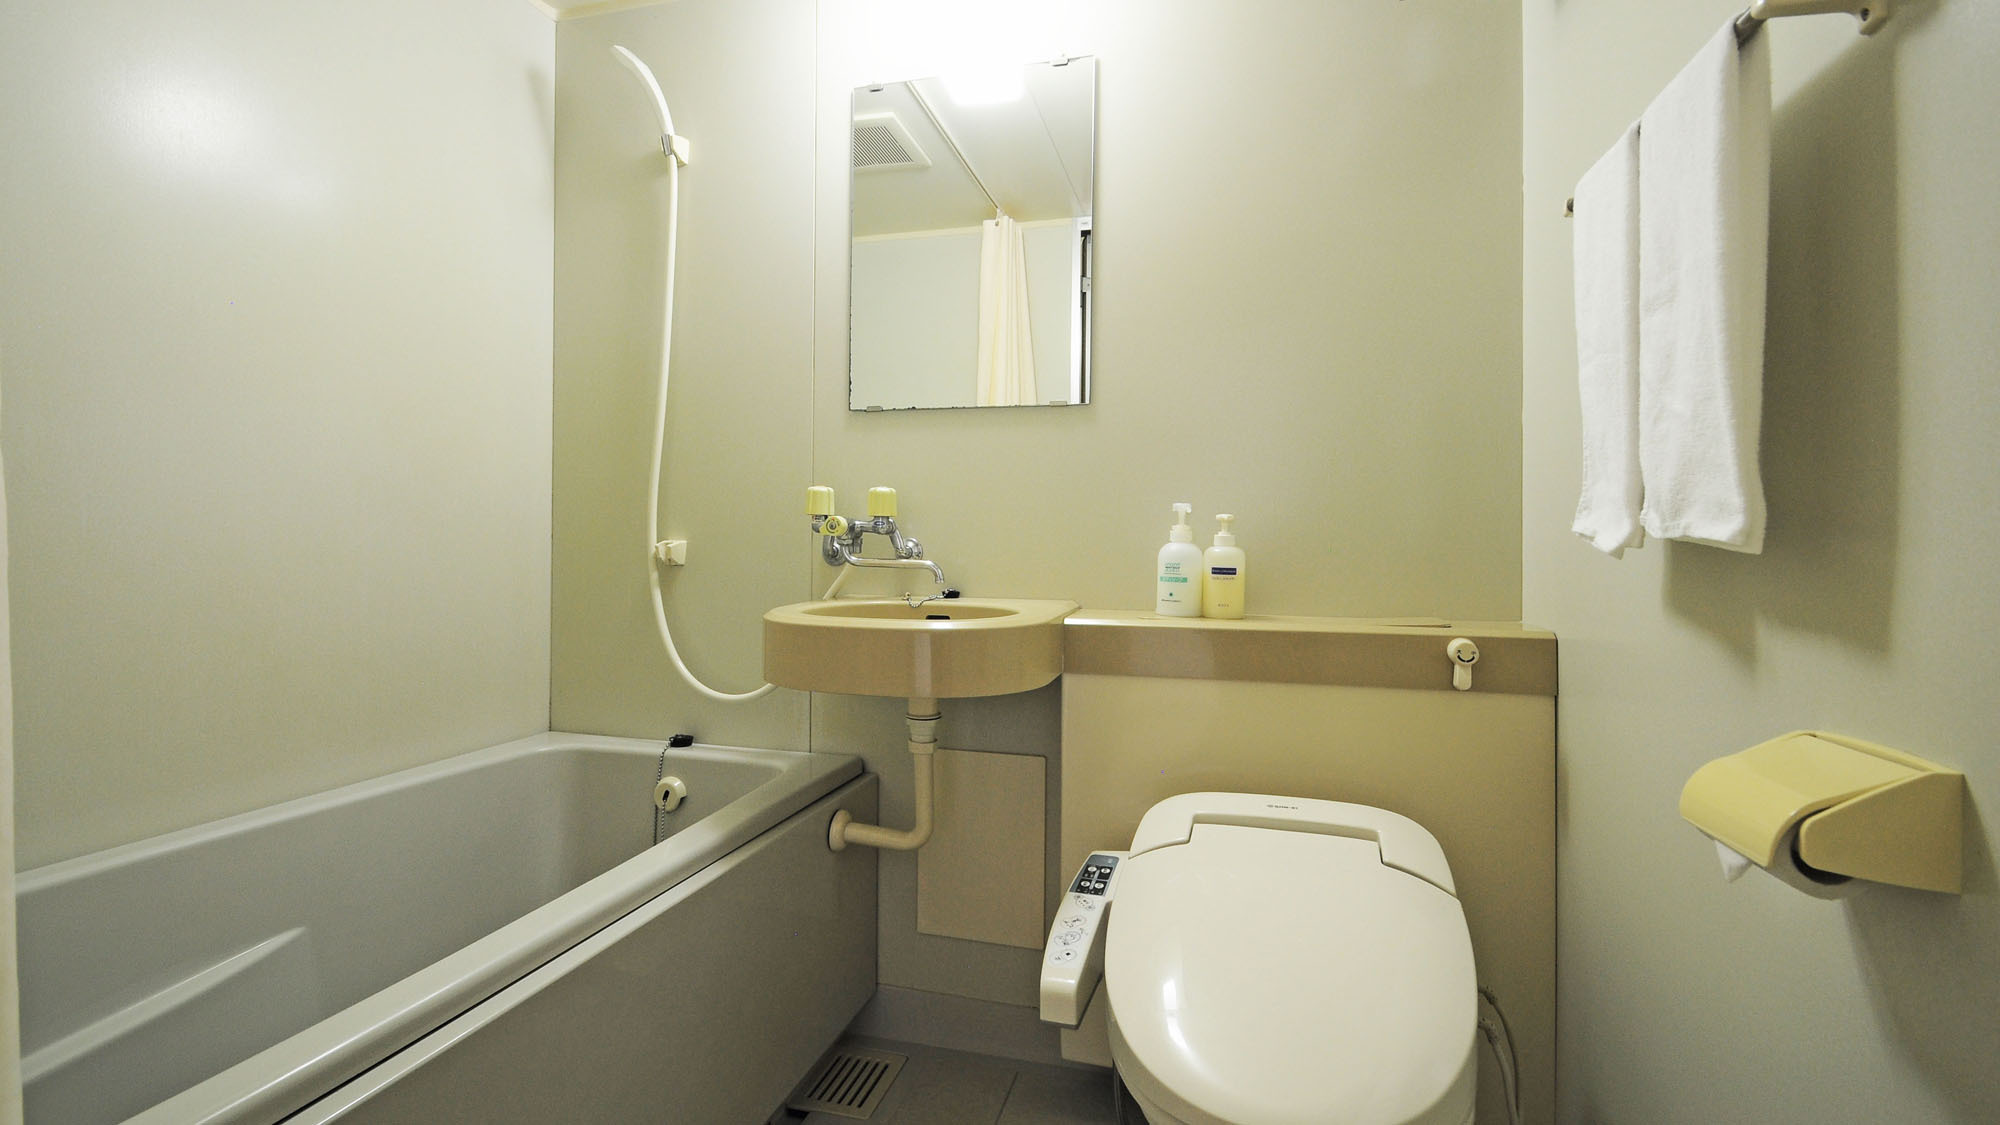 【客室】全客室は温水シャワー洗浄付きトイレのユニットバスとなります